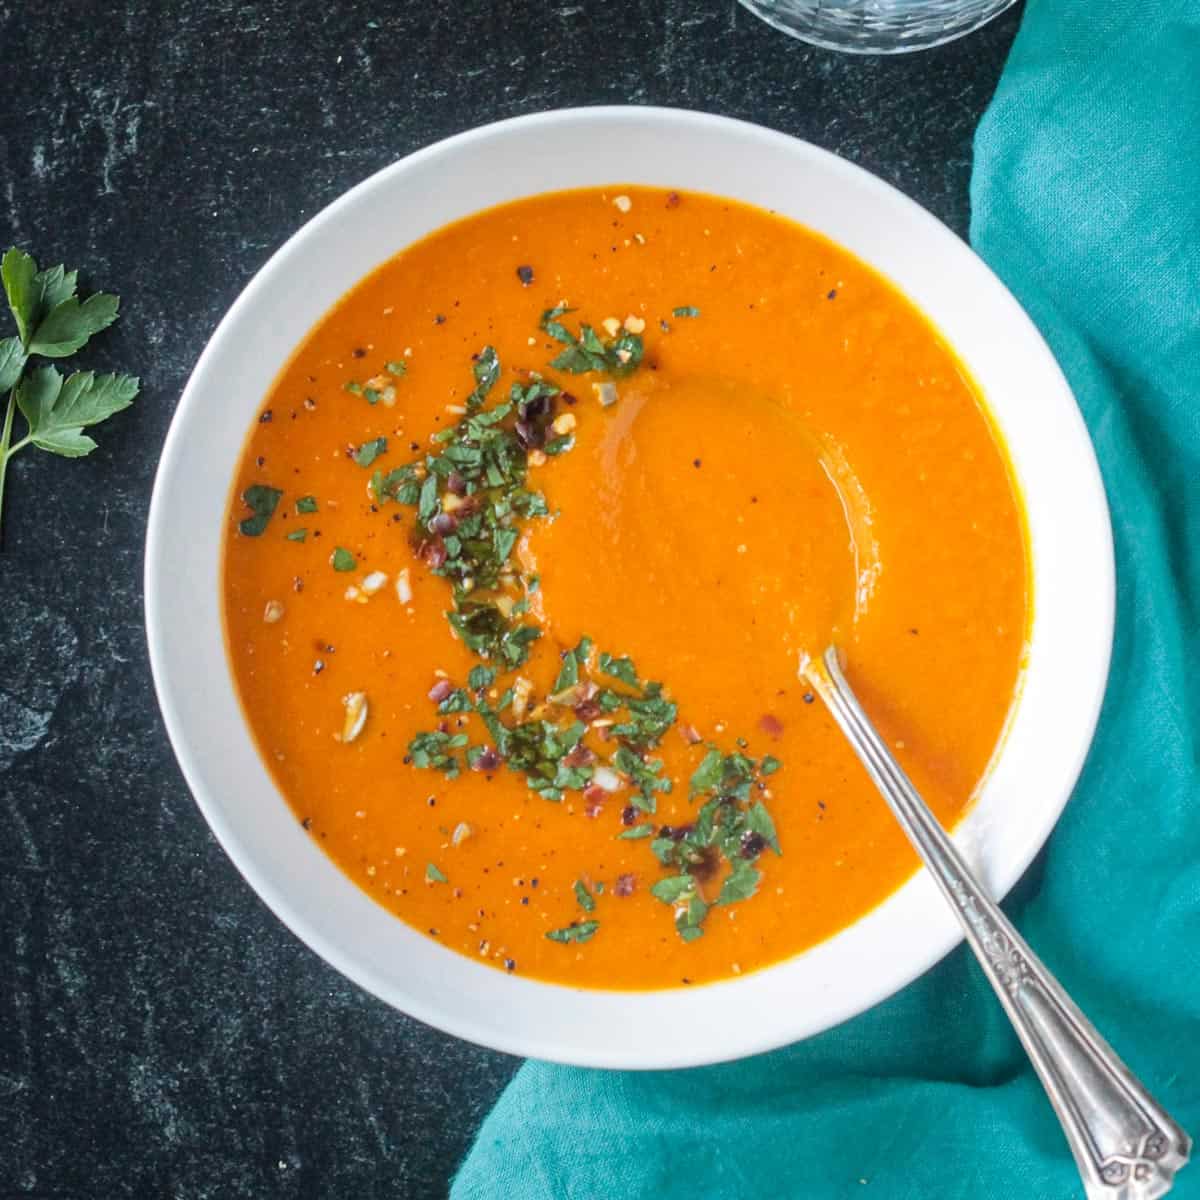 https://www.veggieinspired.com/wp-content/uploads/2016/06/vegan-carrot-soup-featured.jpg